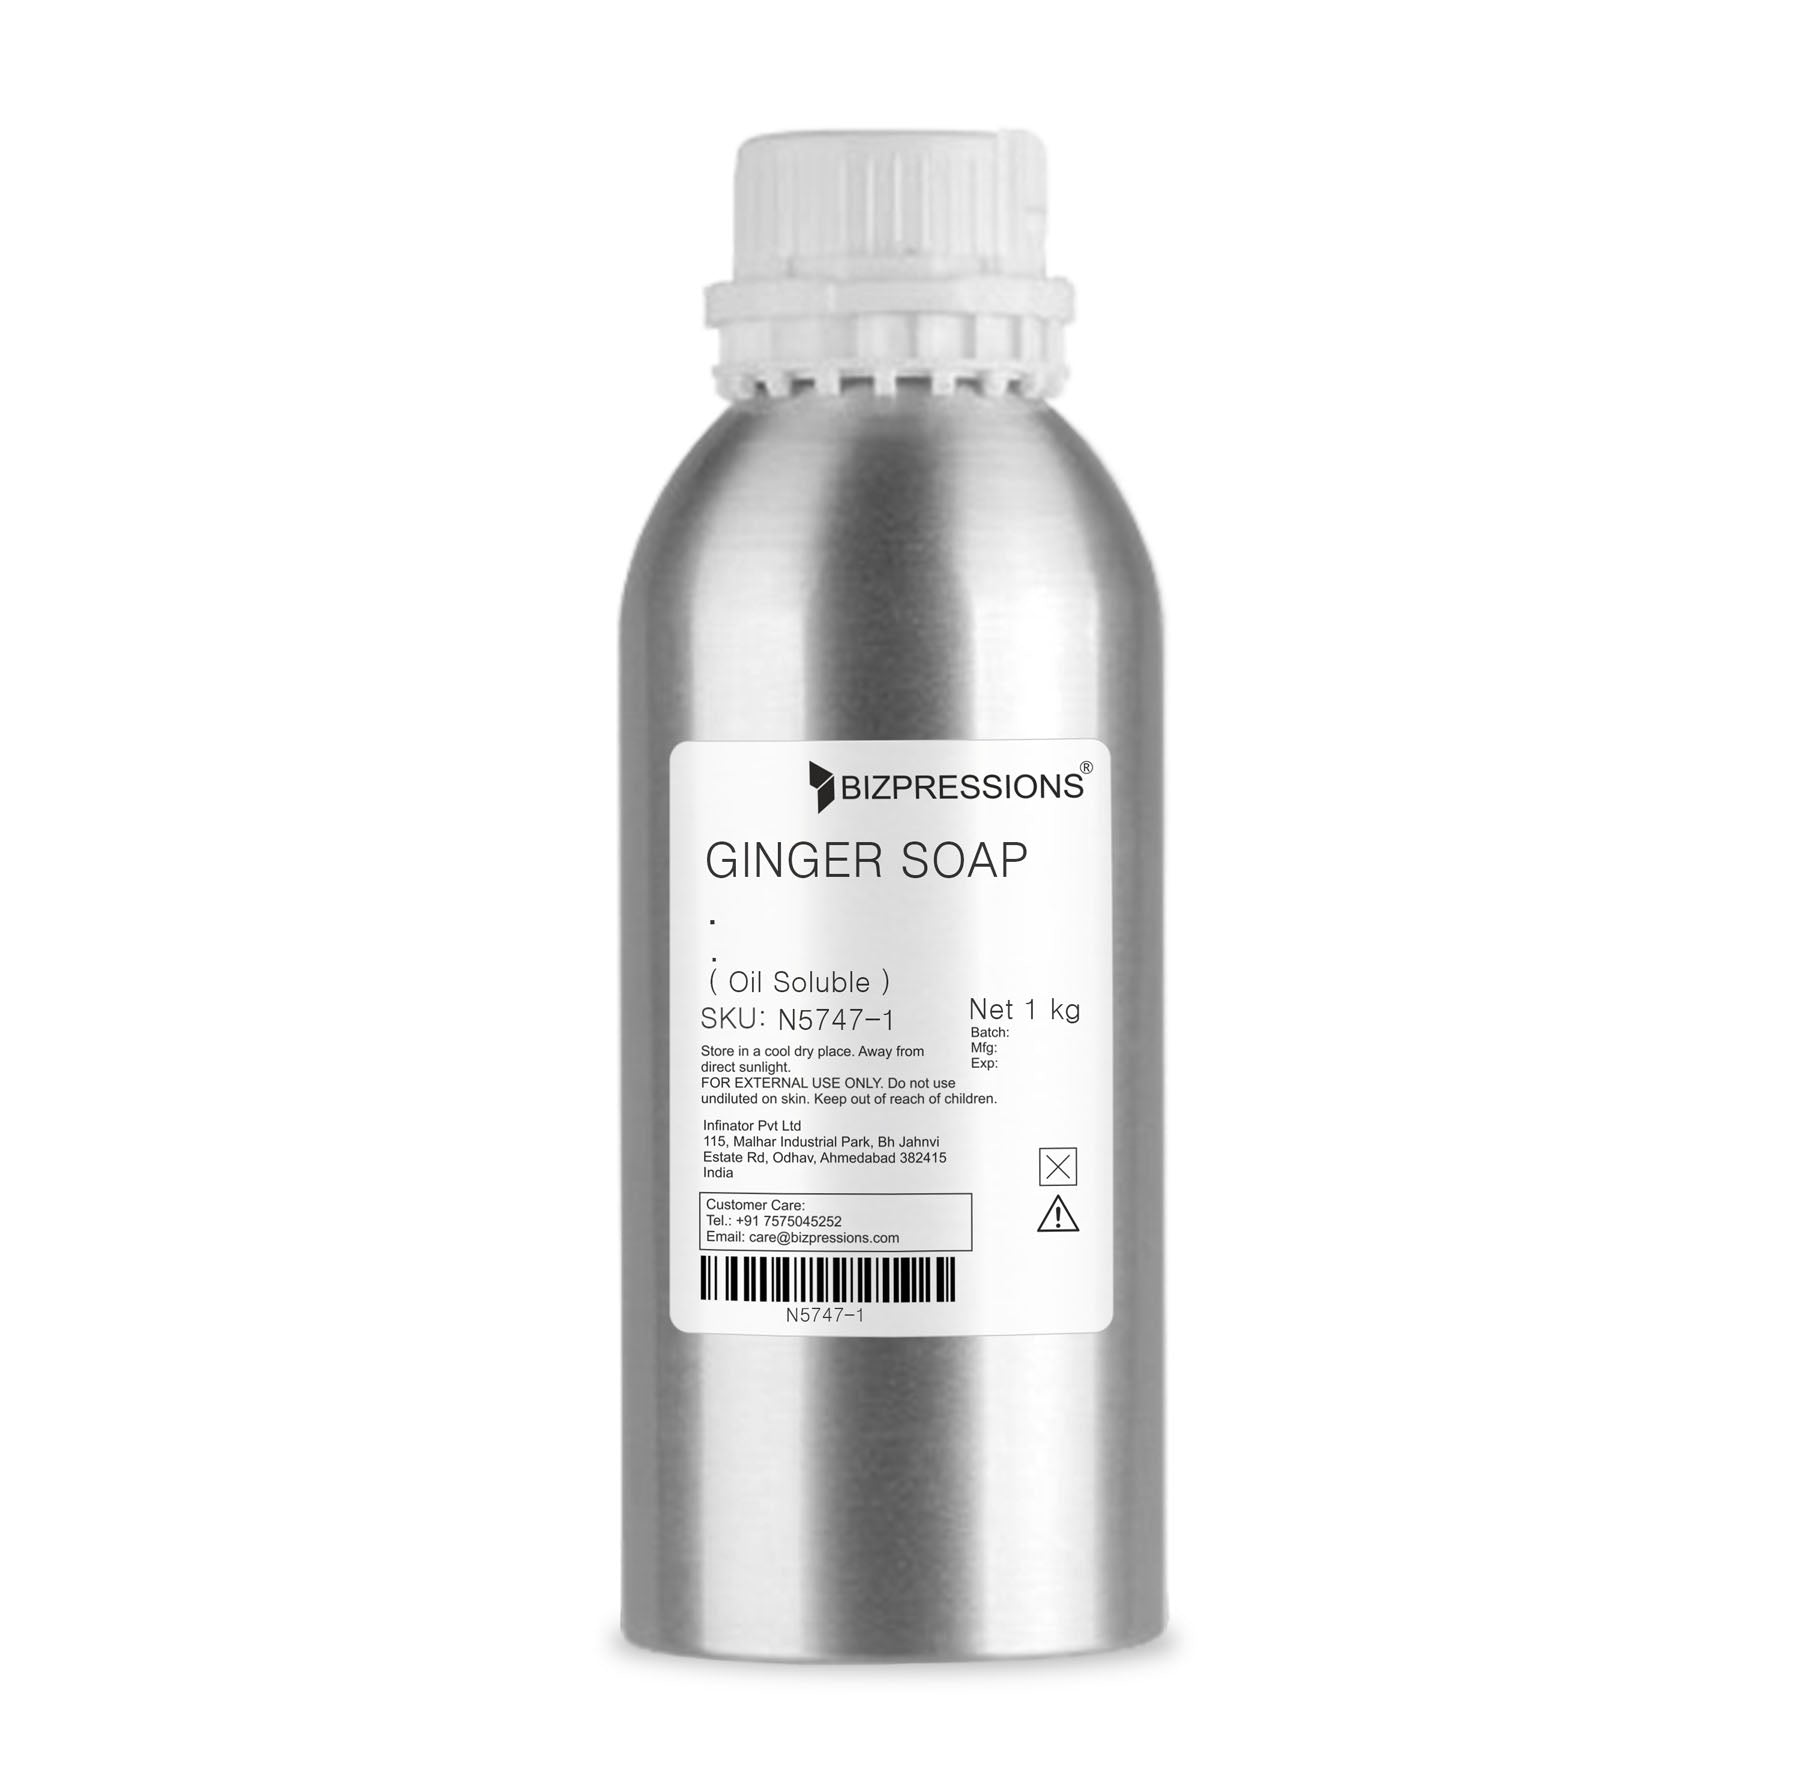 GINGER SOAP - Fragrance ( Oil Soluble ) - 1 kg